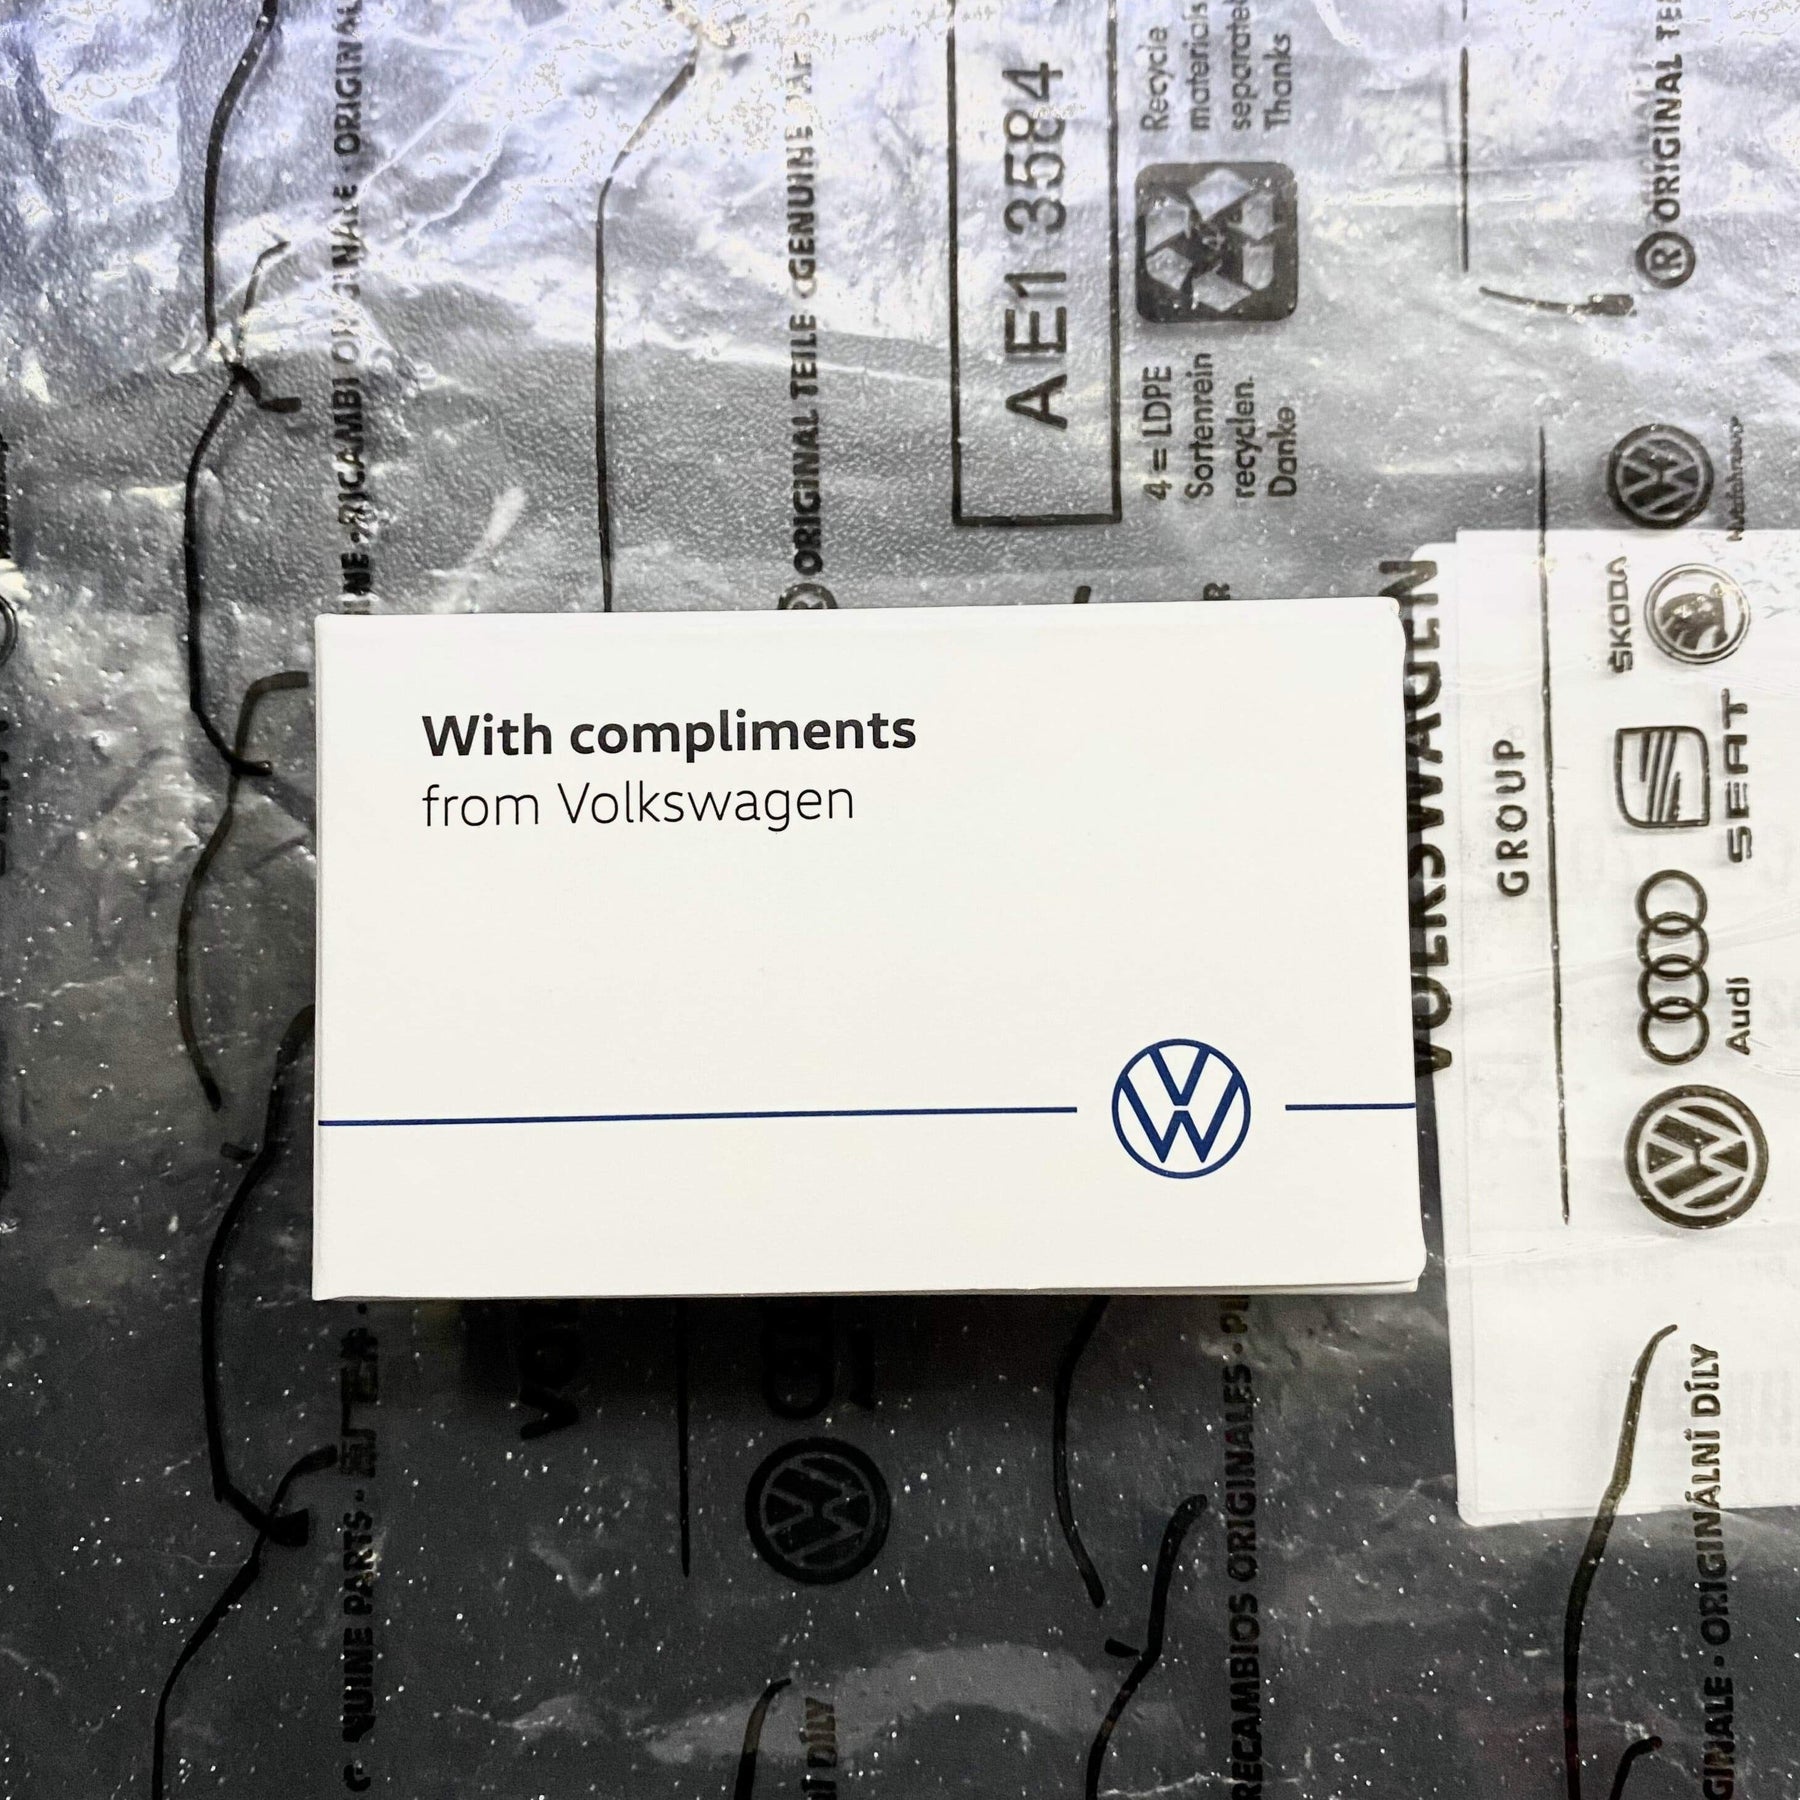 HOUSSE CLÉ VOITURE Noir pour VW Polo Golf 7 VII GTI GTD GTE R EUR